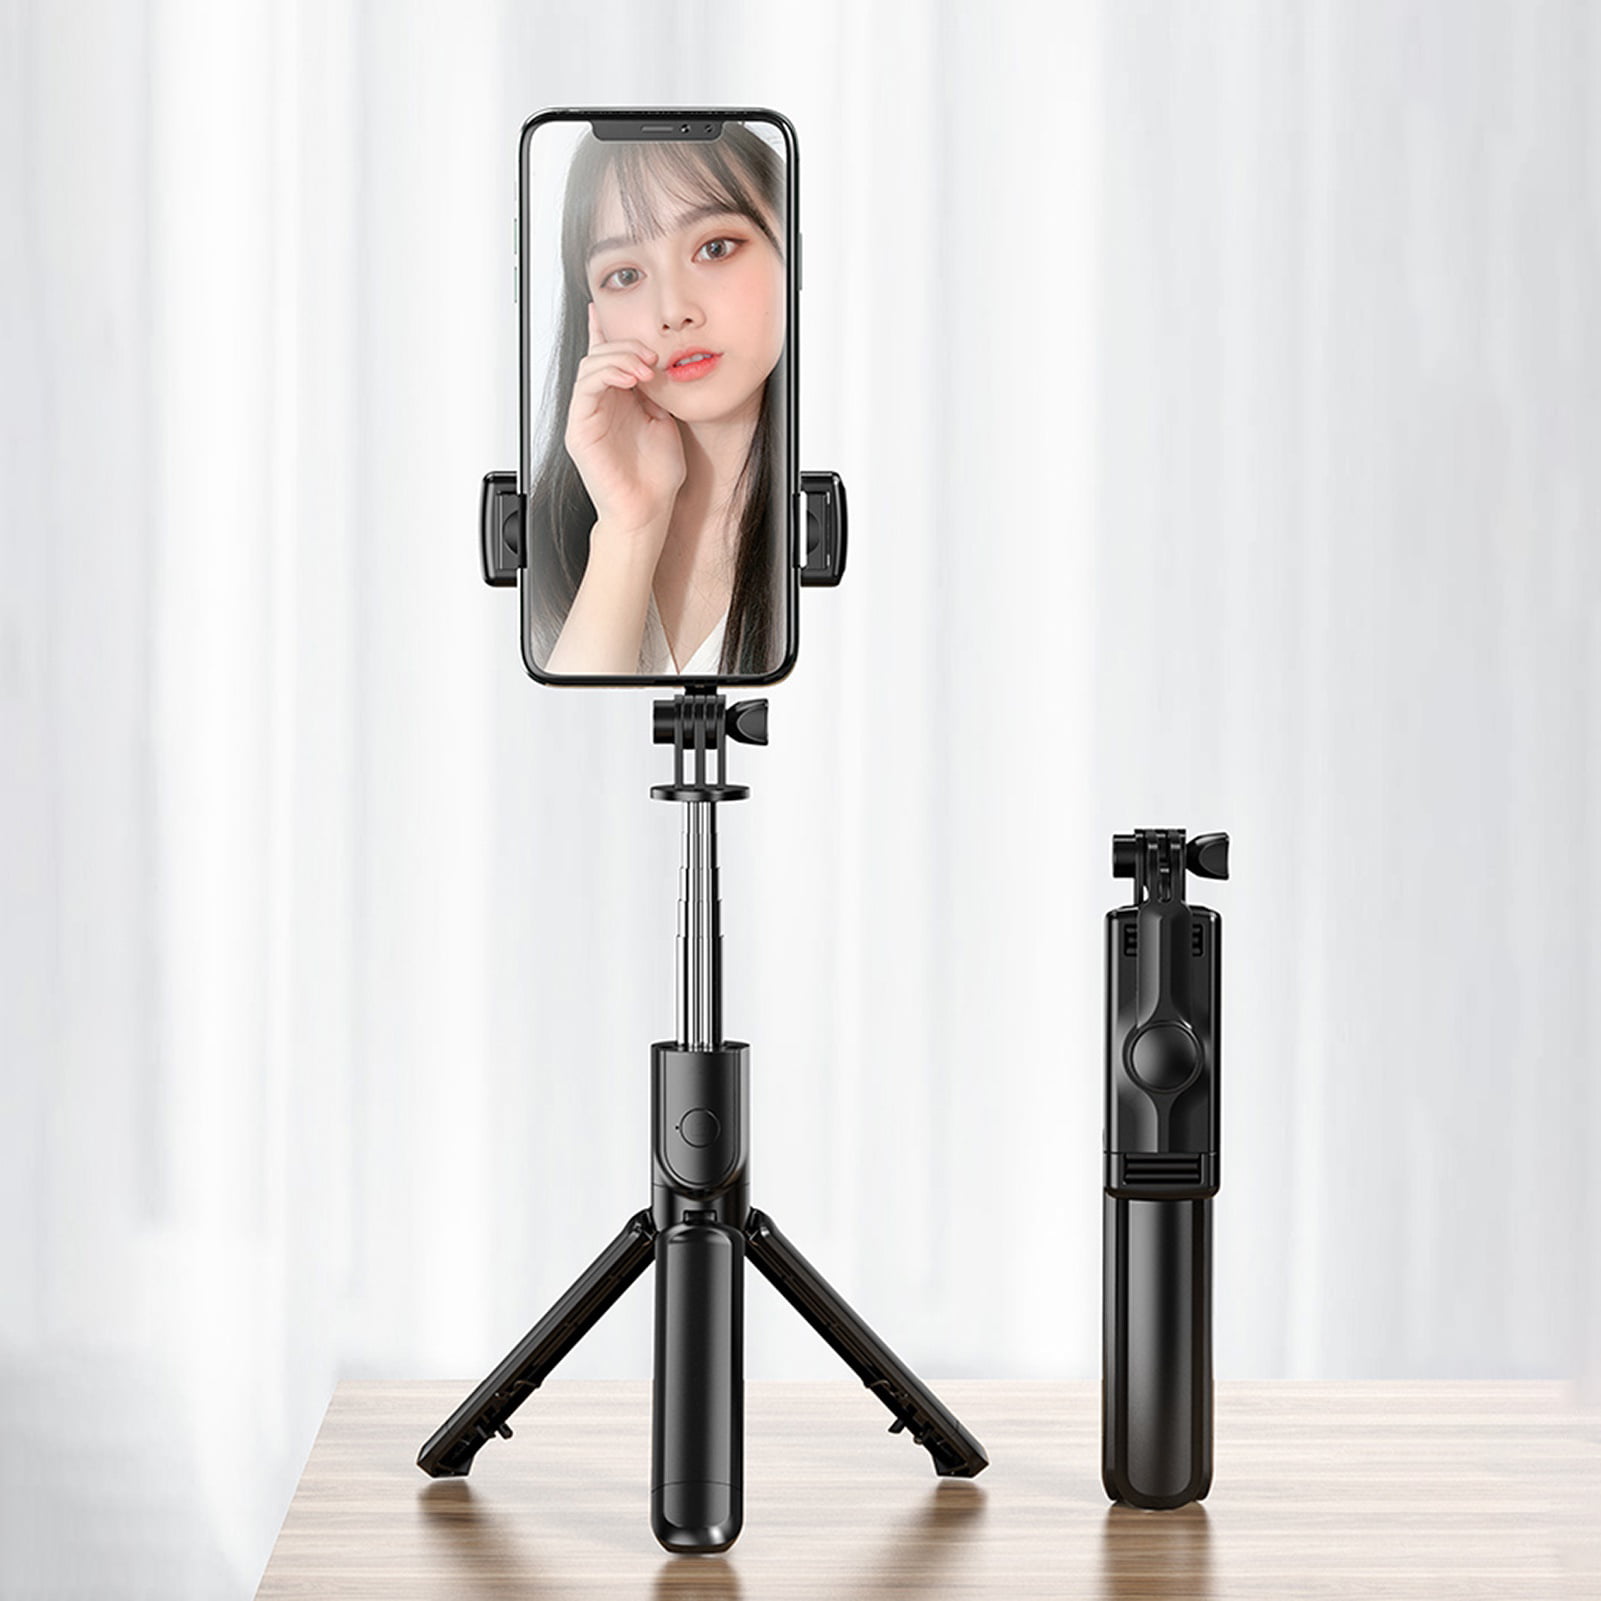 UURIG-Trépied Selfie Stick pour GoPro, 12, 11, Insta360, Action Camera,  Selfie Stick, Hand Grips Extension, Nouveaux accessoires - AliExpress